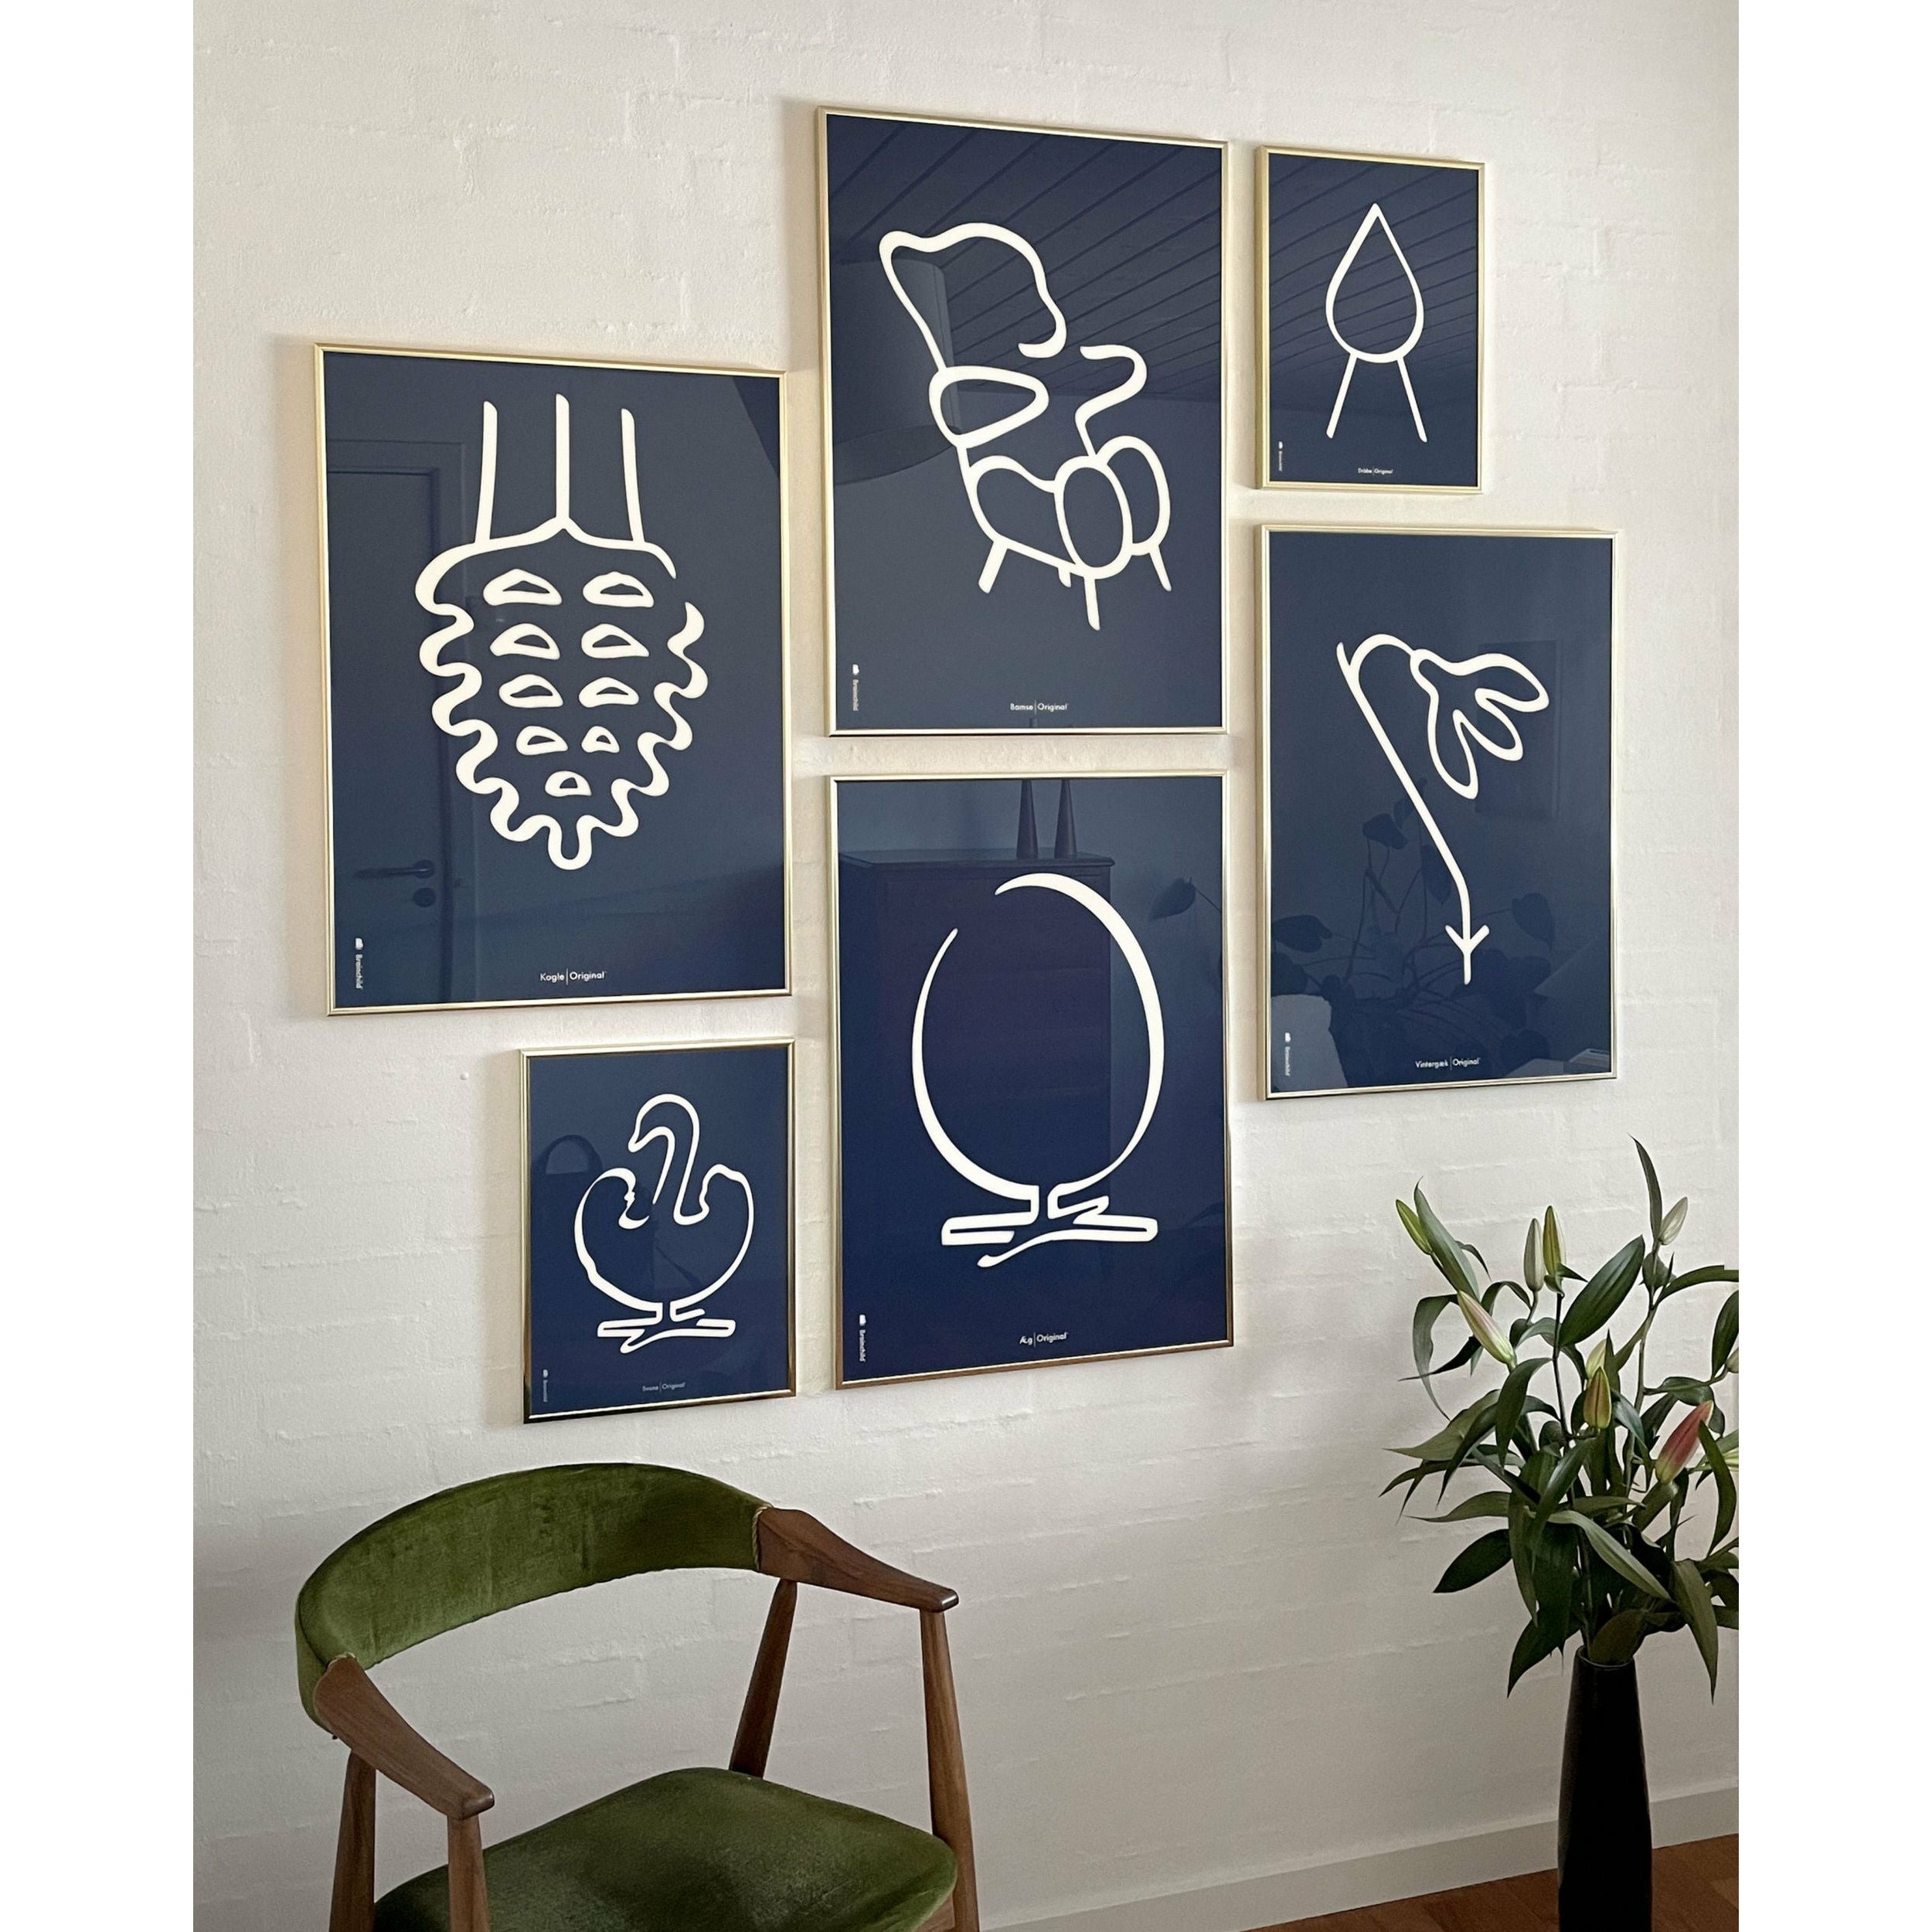 Pomysły plakat linii stożkowej, rama w czarnym lakierowanym drewnie 70x100 cm, niebieskie tło